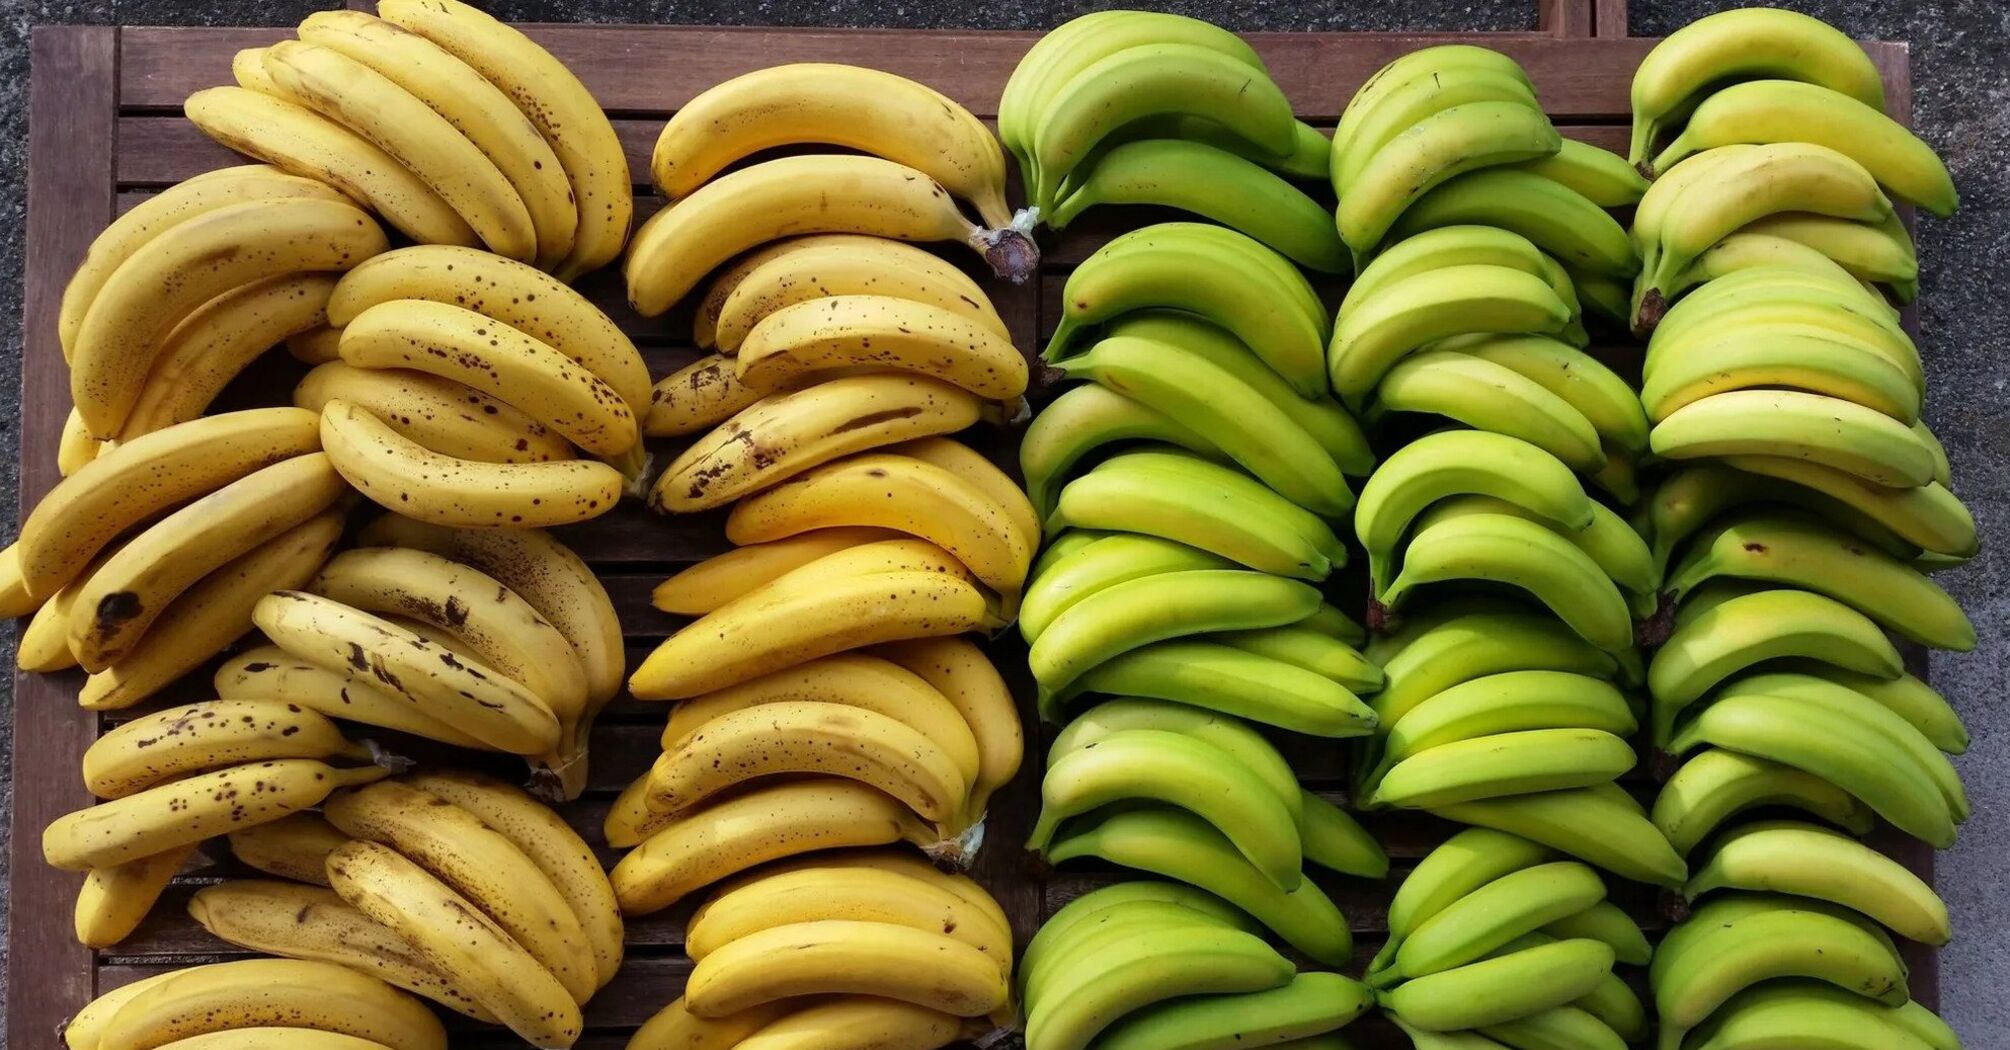 How to choose ripe, non-GMO bananas